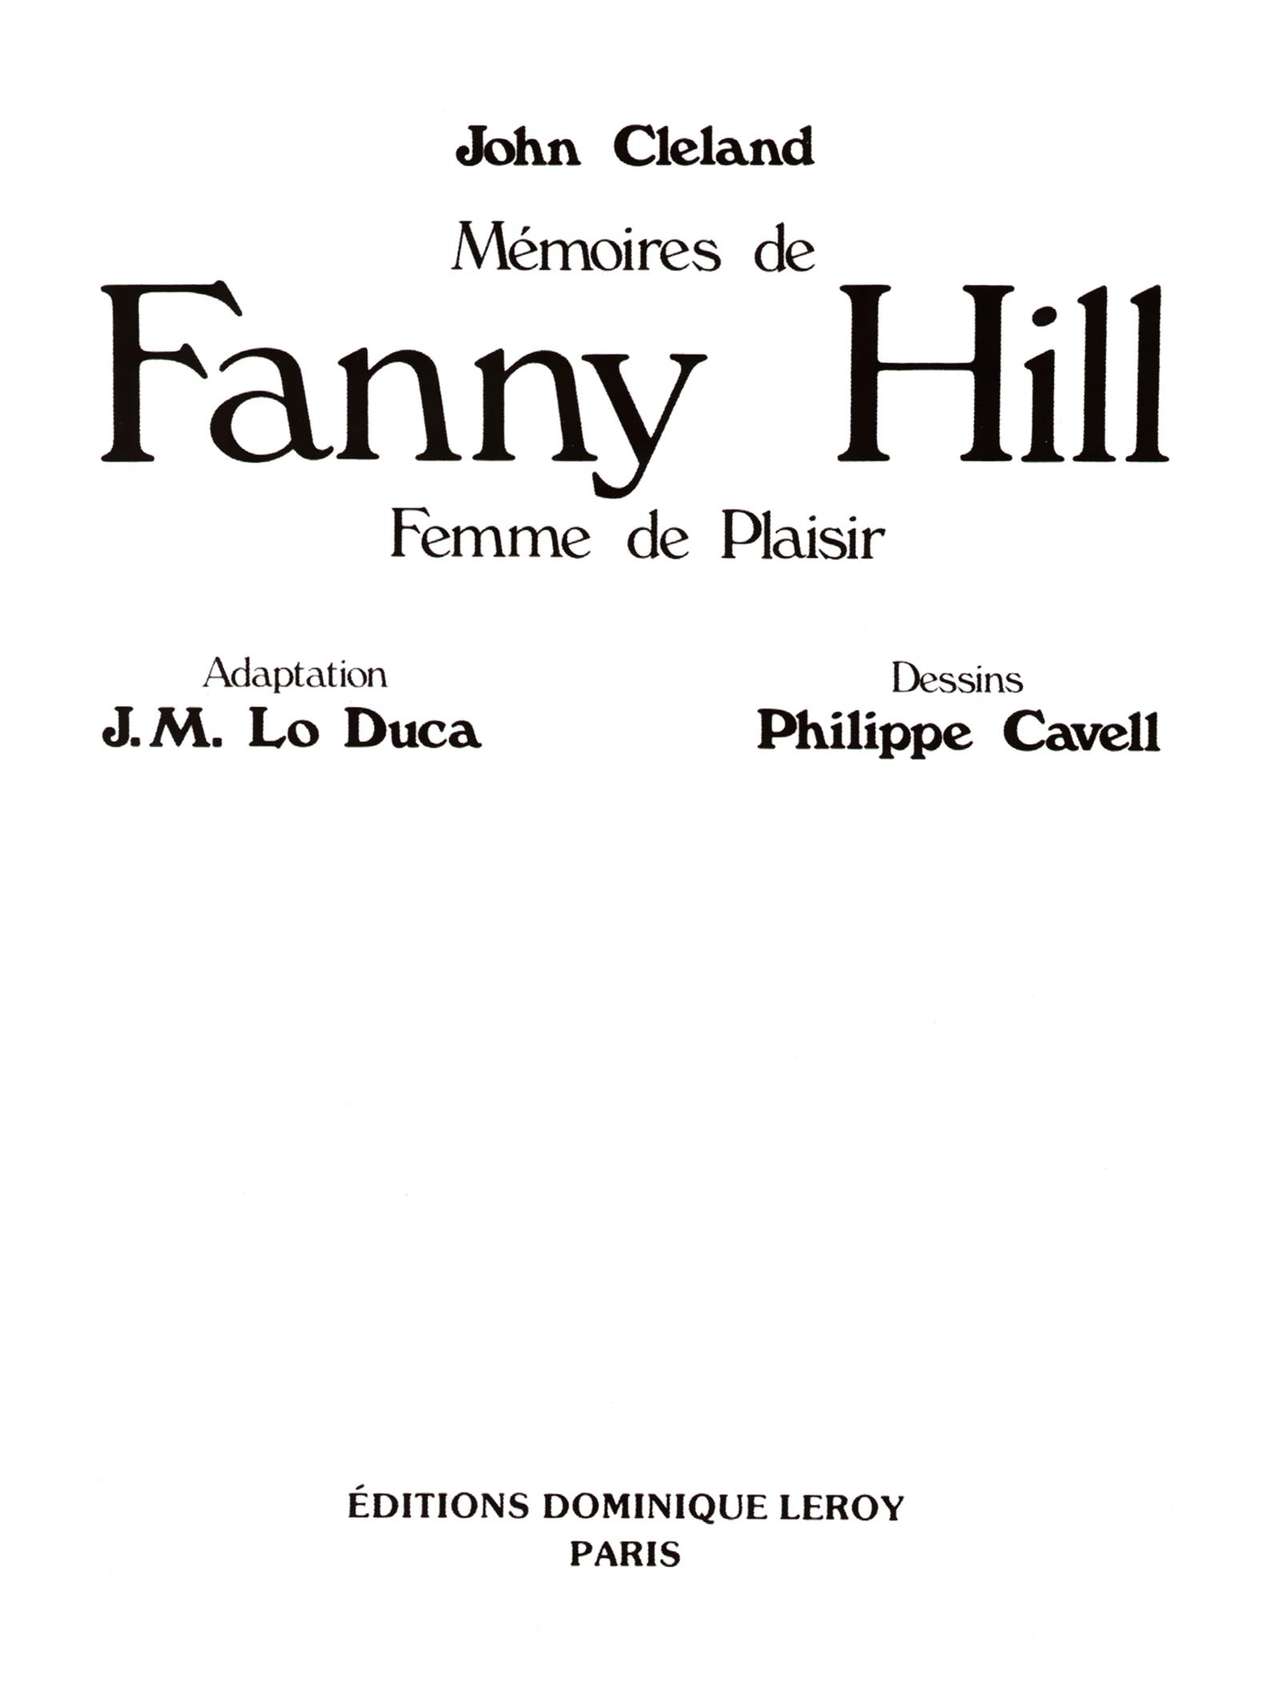 Fanny Hill numero d'image 3